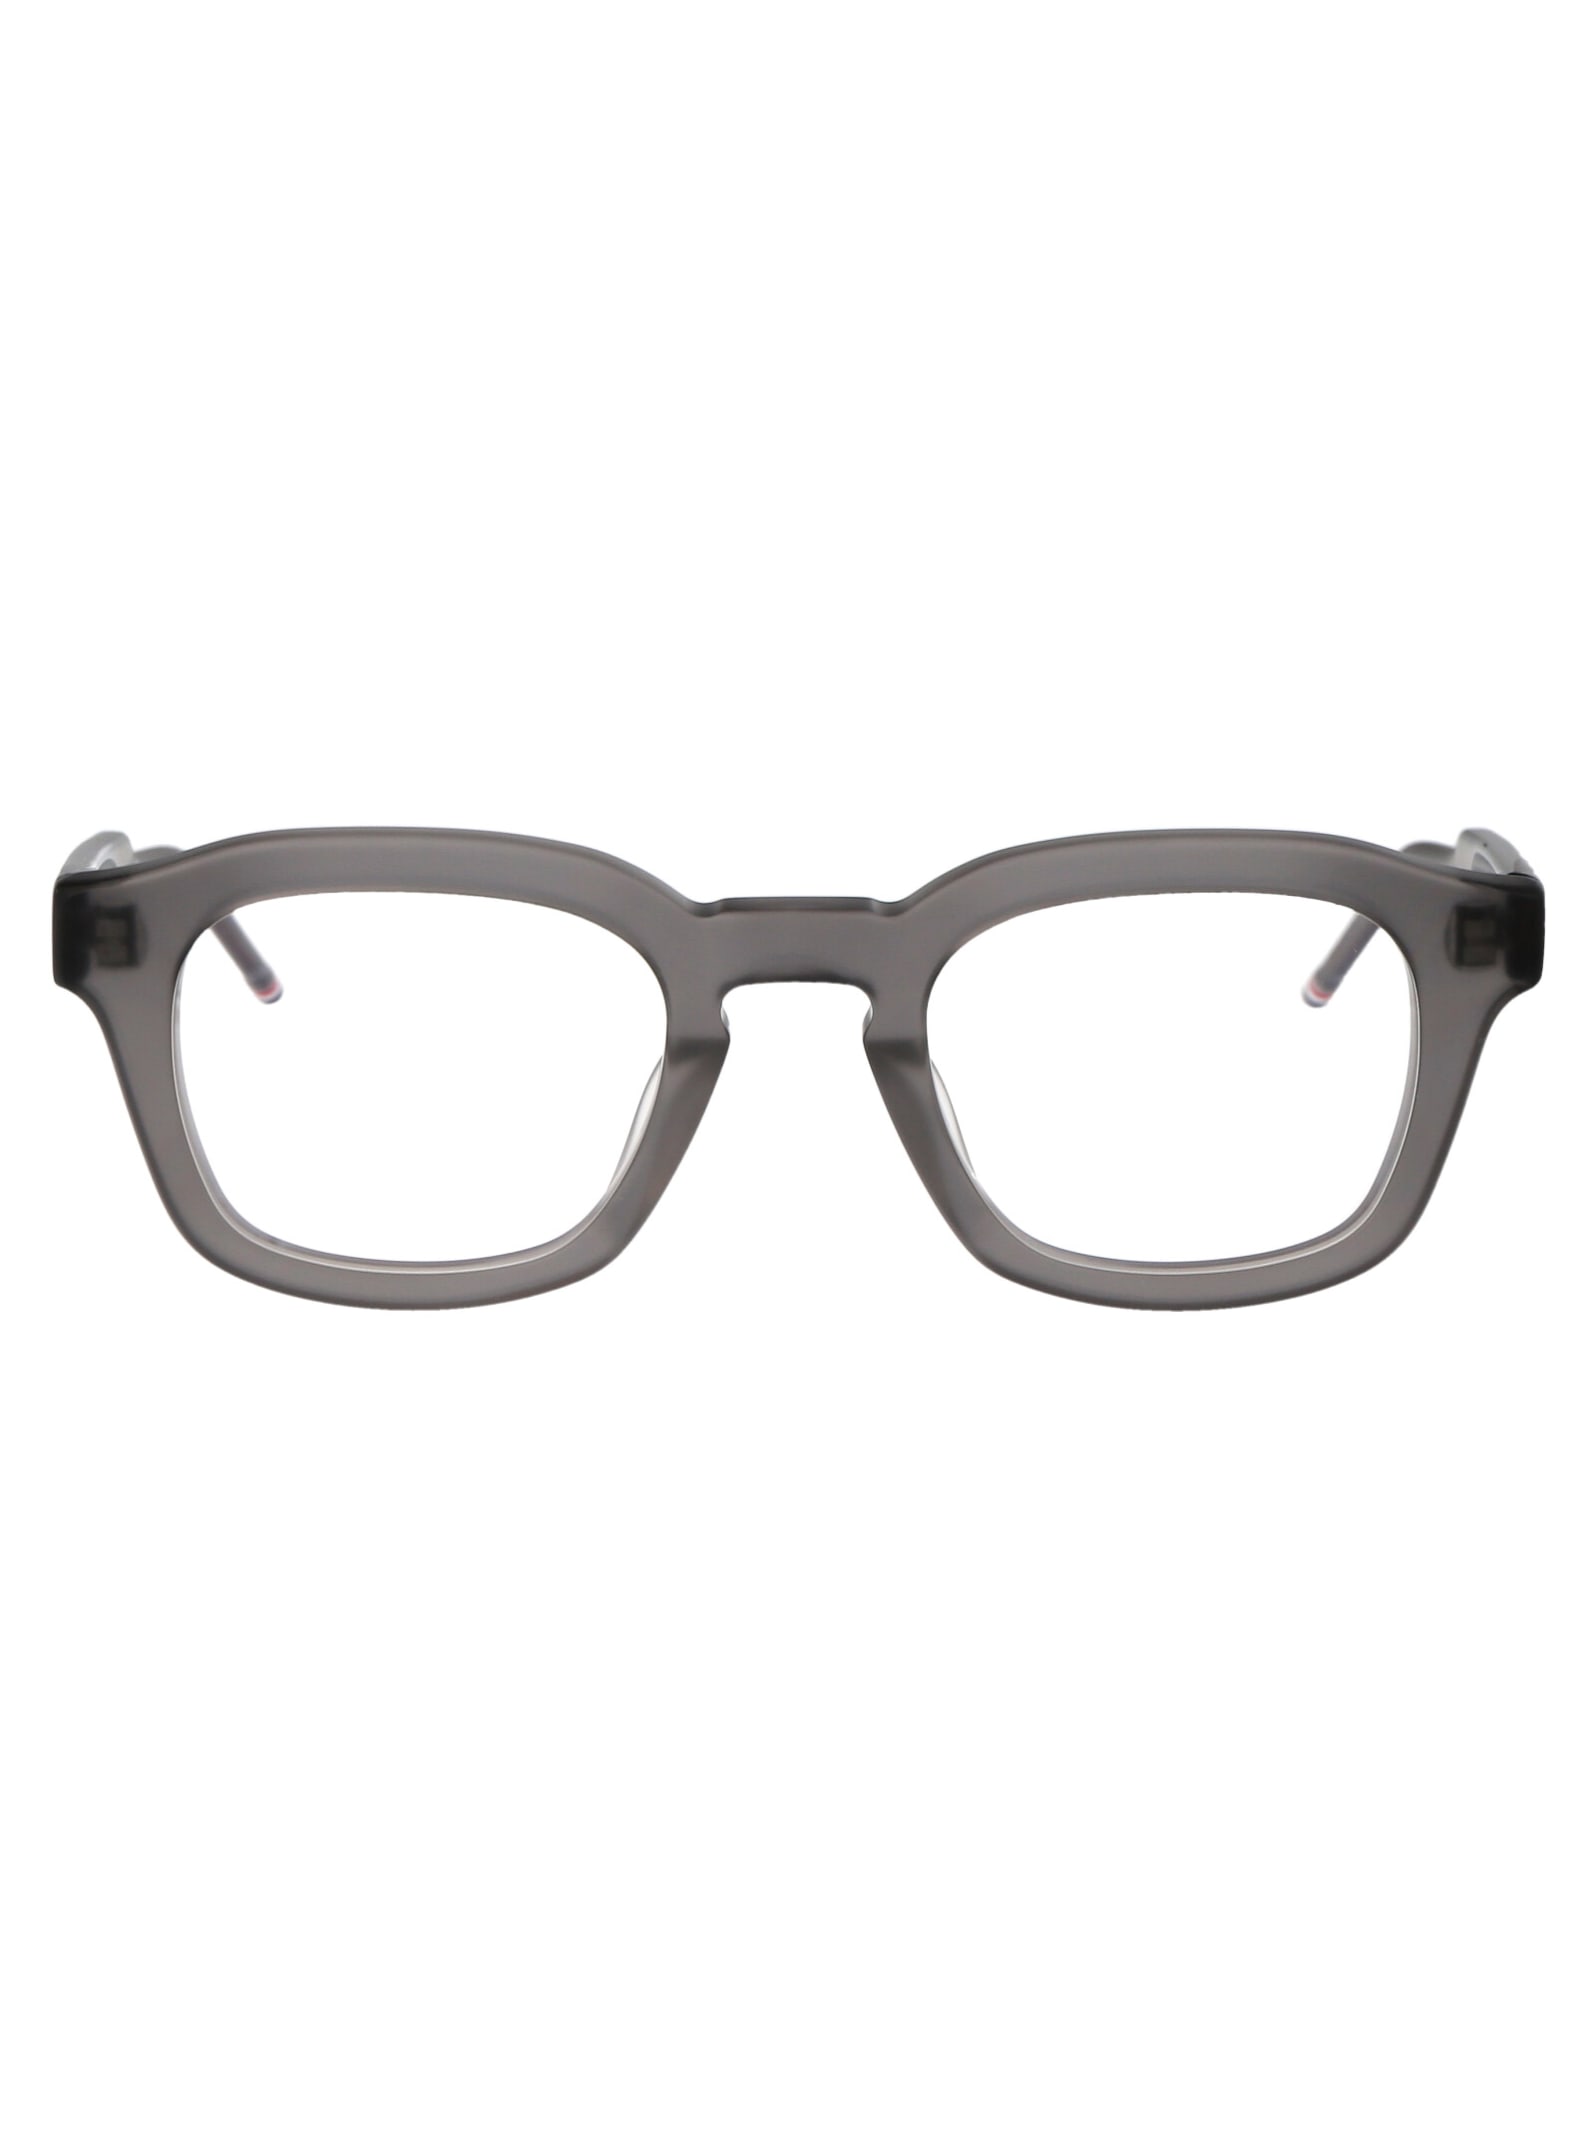 Ueo412a-g0002-060-48 Glasses